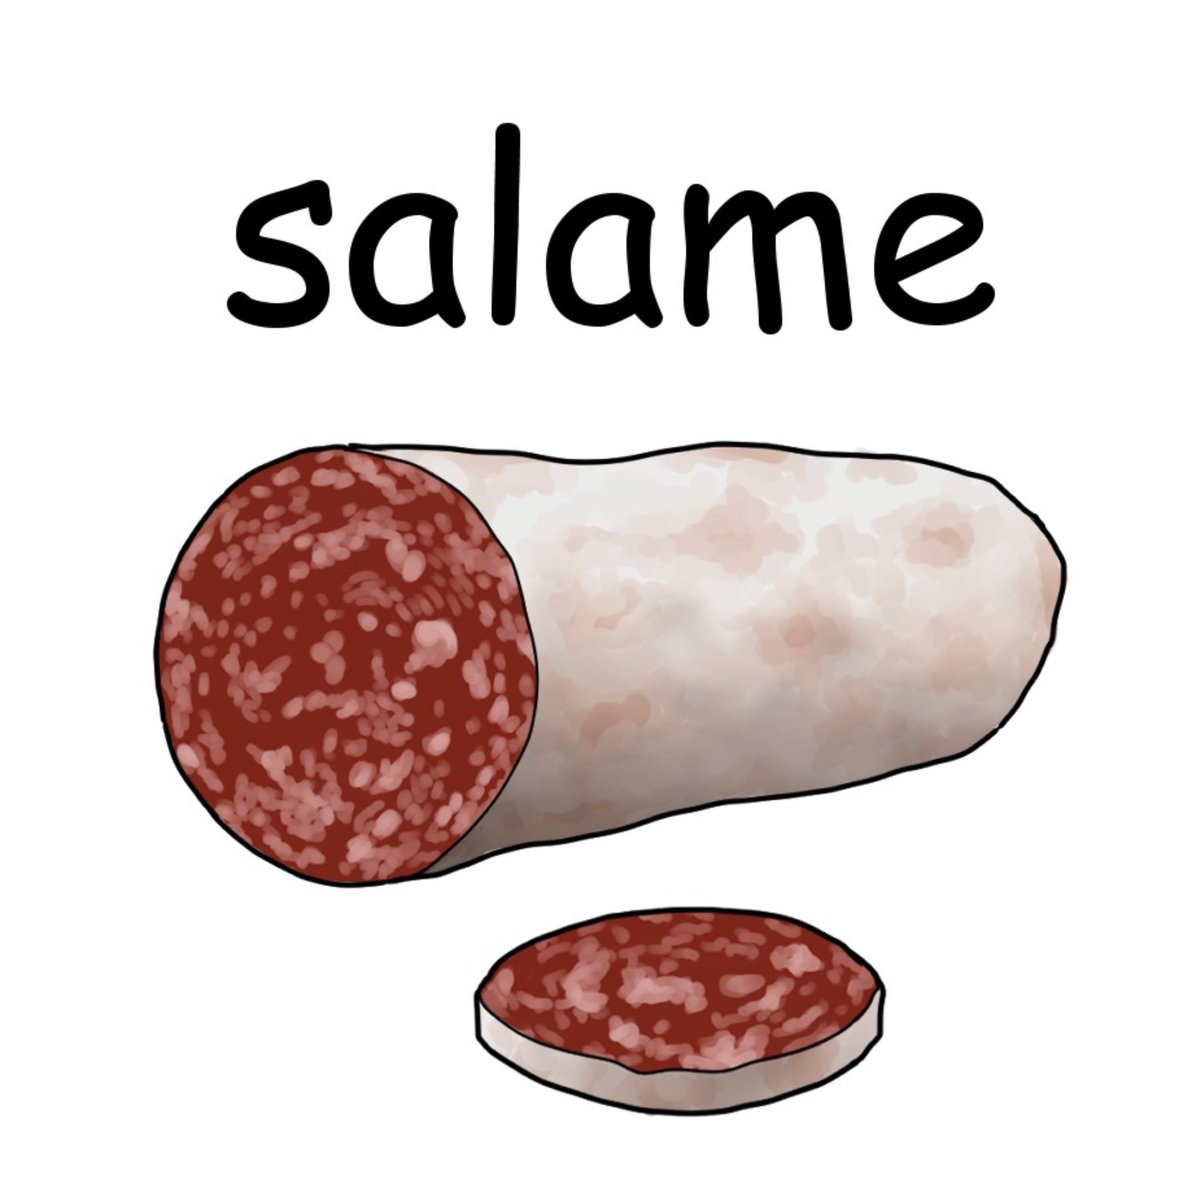 毎日イラストイタリア語 サラミ Salame サラーメ 豚のひき肉にラードを加え 塩こしょう スパイスなどで味をつけ腸詰めにしたソーセージの一種で Salameという言葉はsale 塩 が語源となっています また Che Salame なんてサラミ と言って は